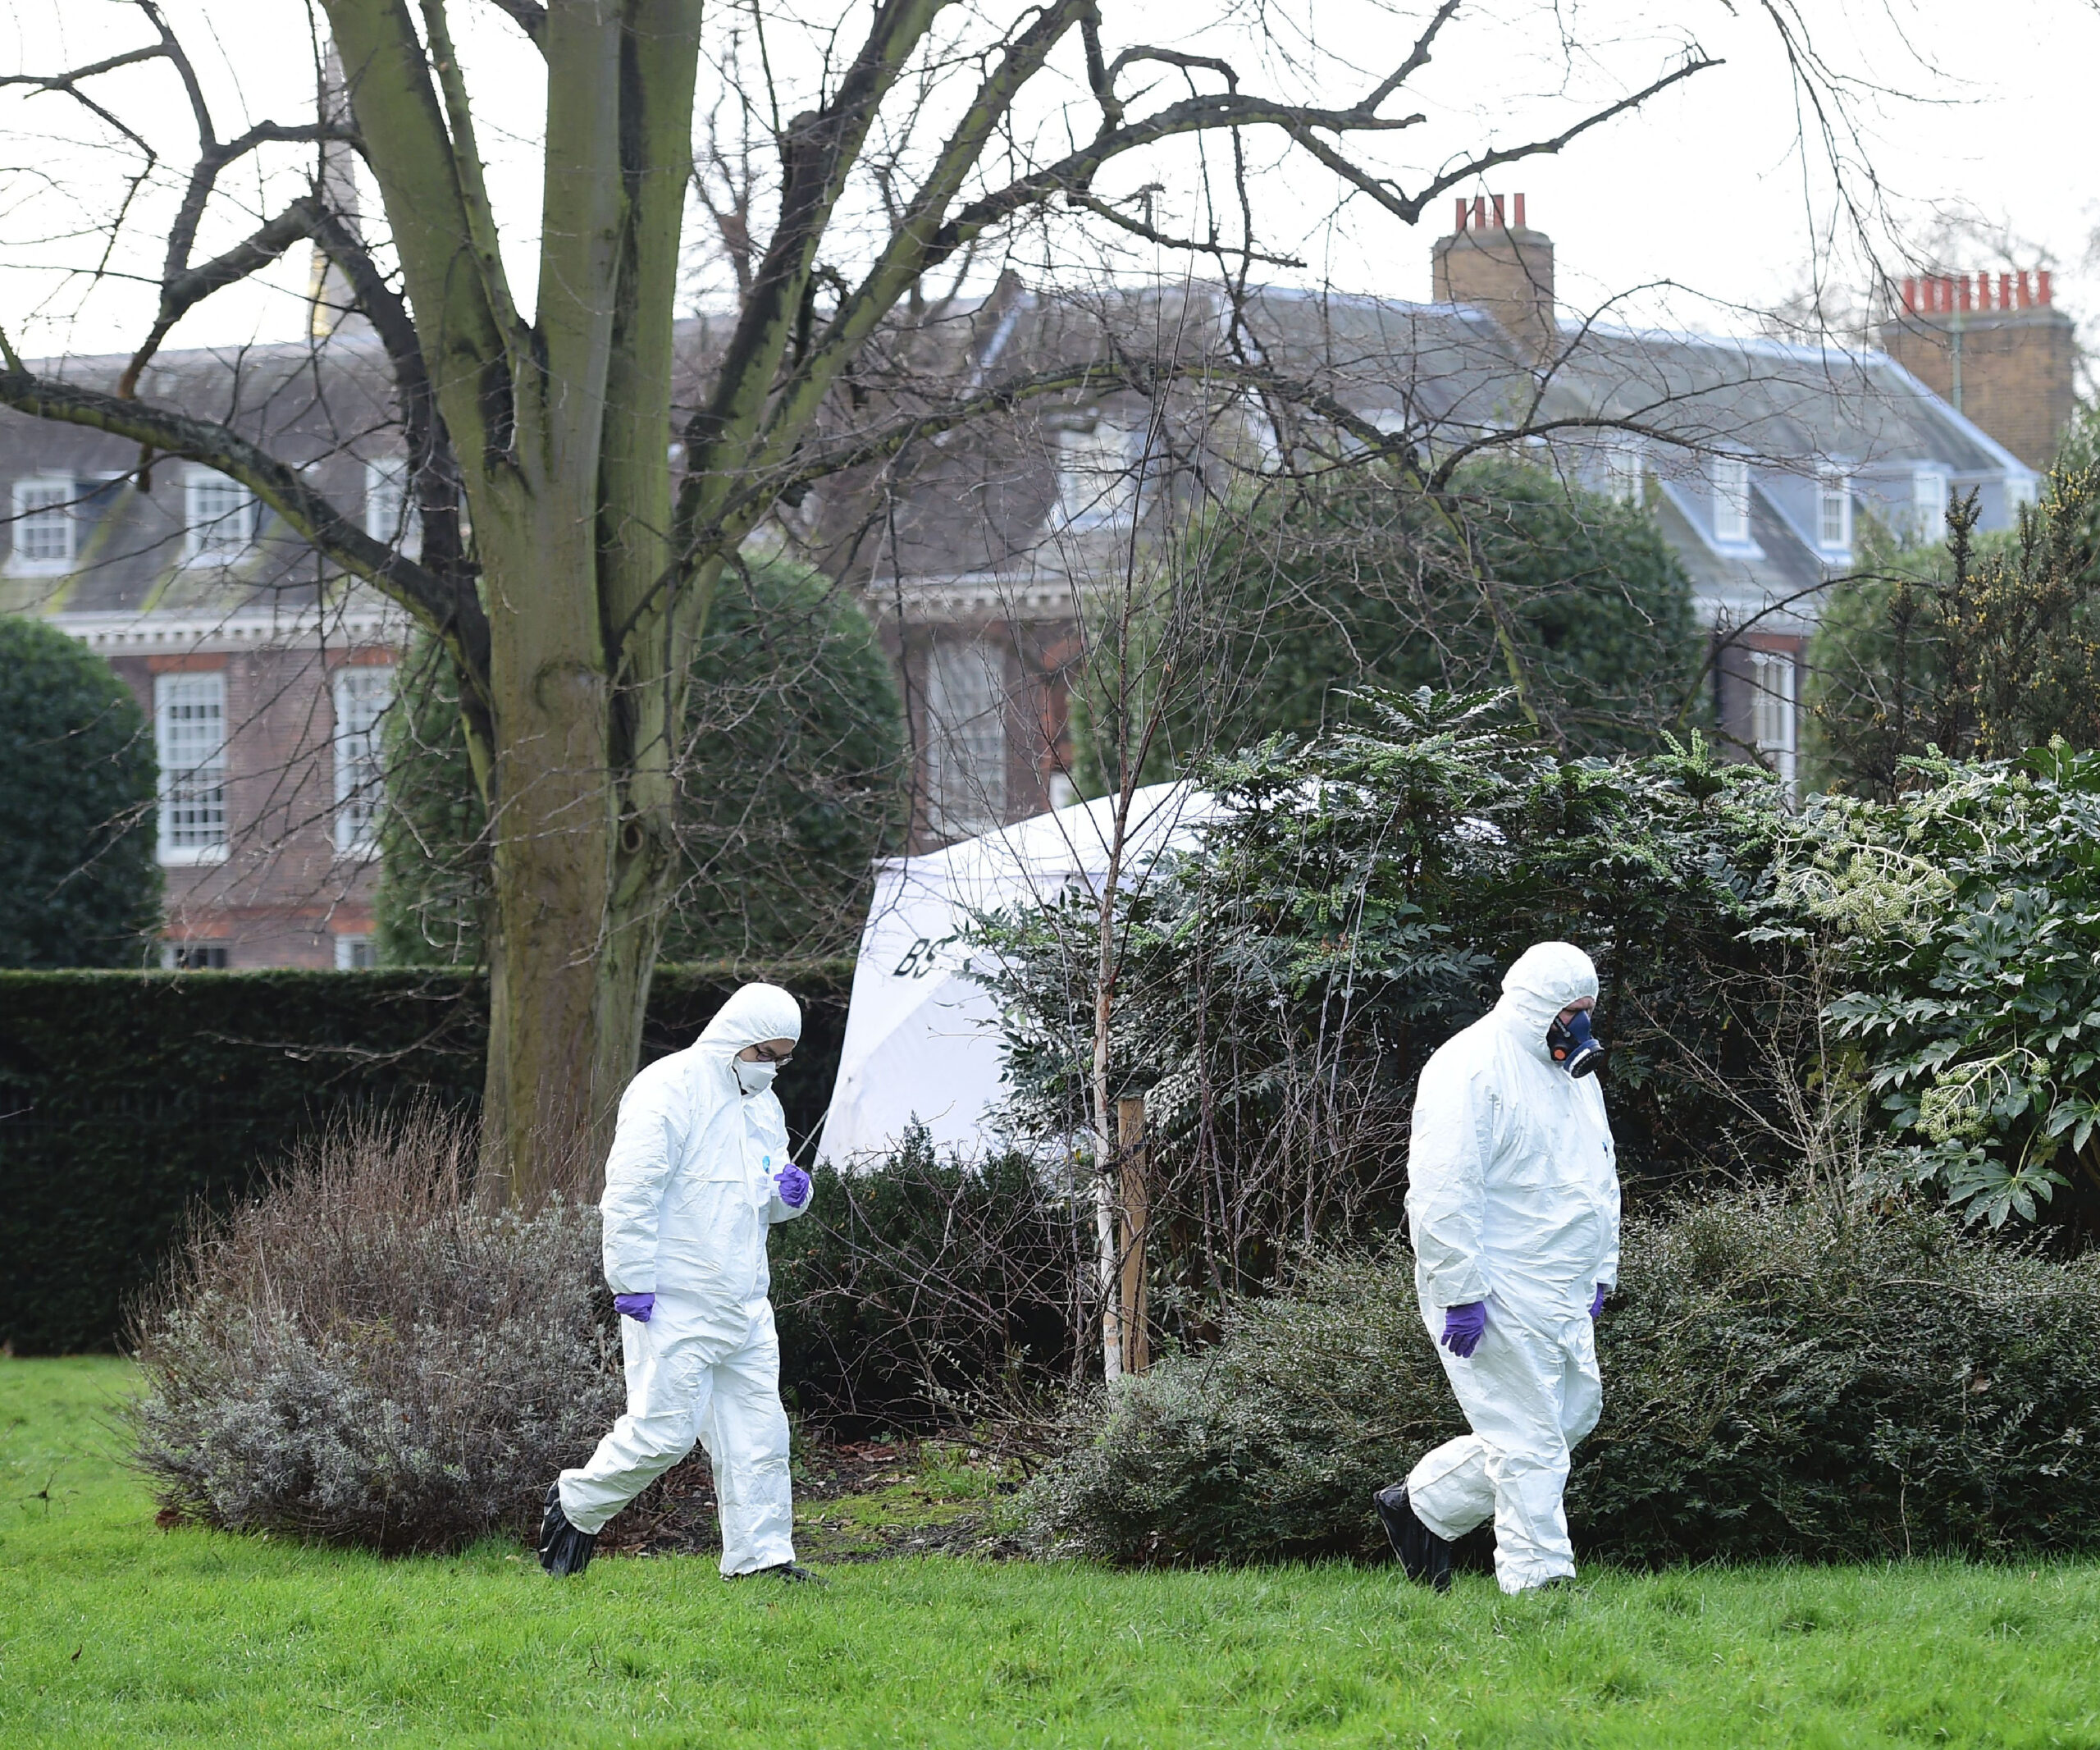 forensics outside kensington palace.